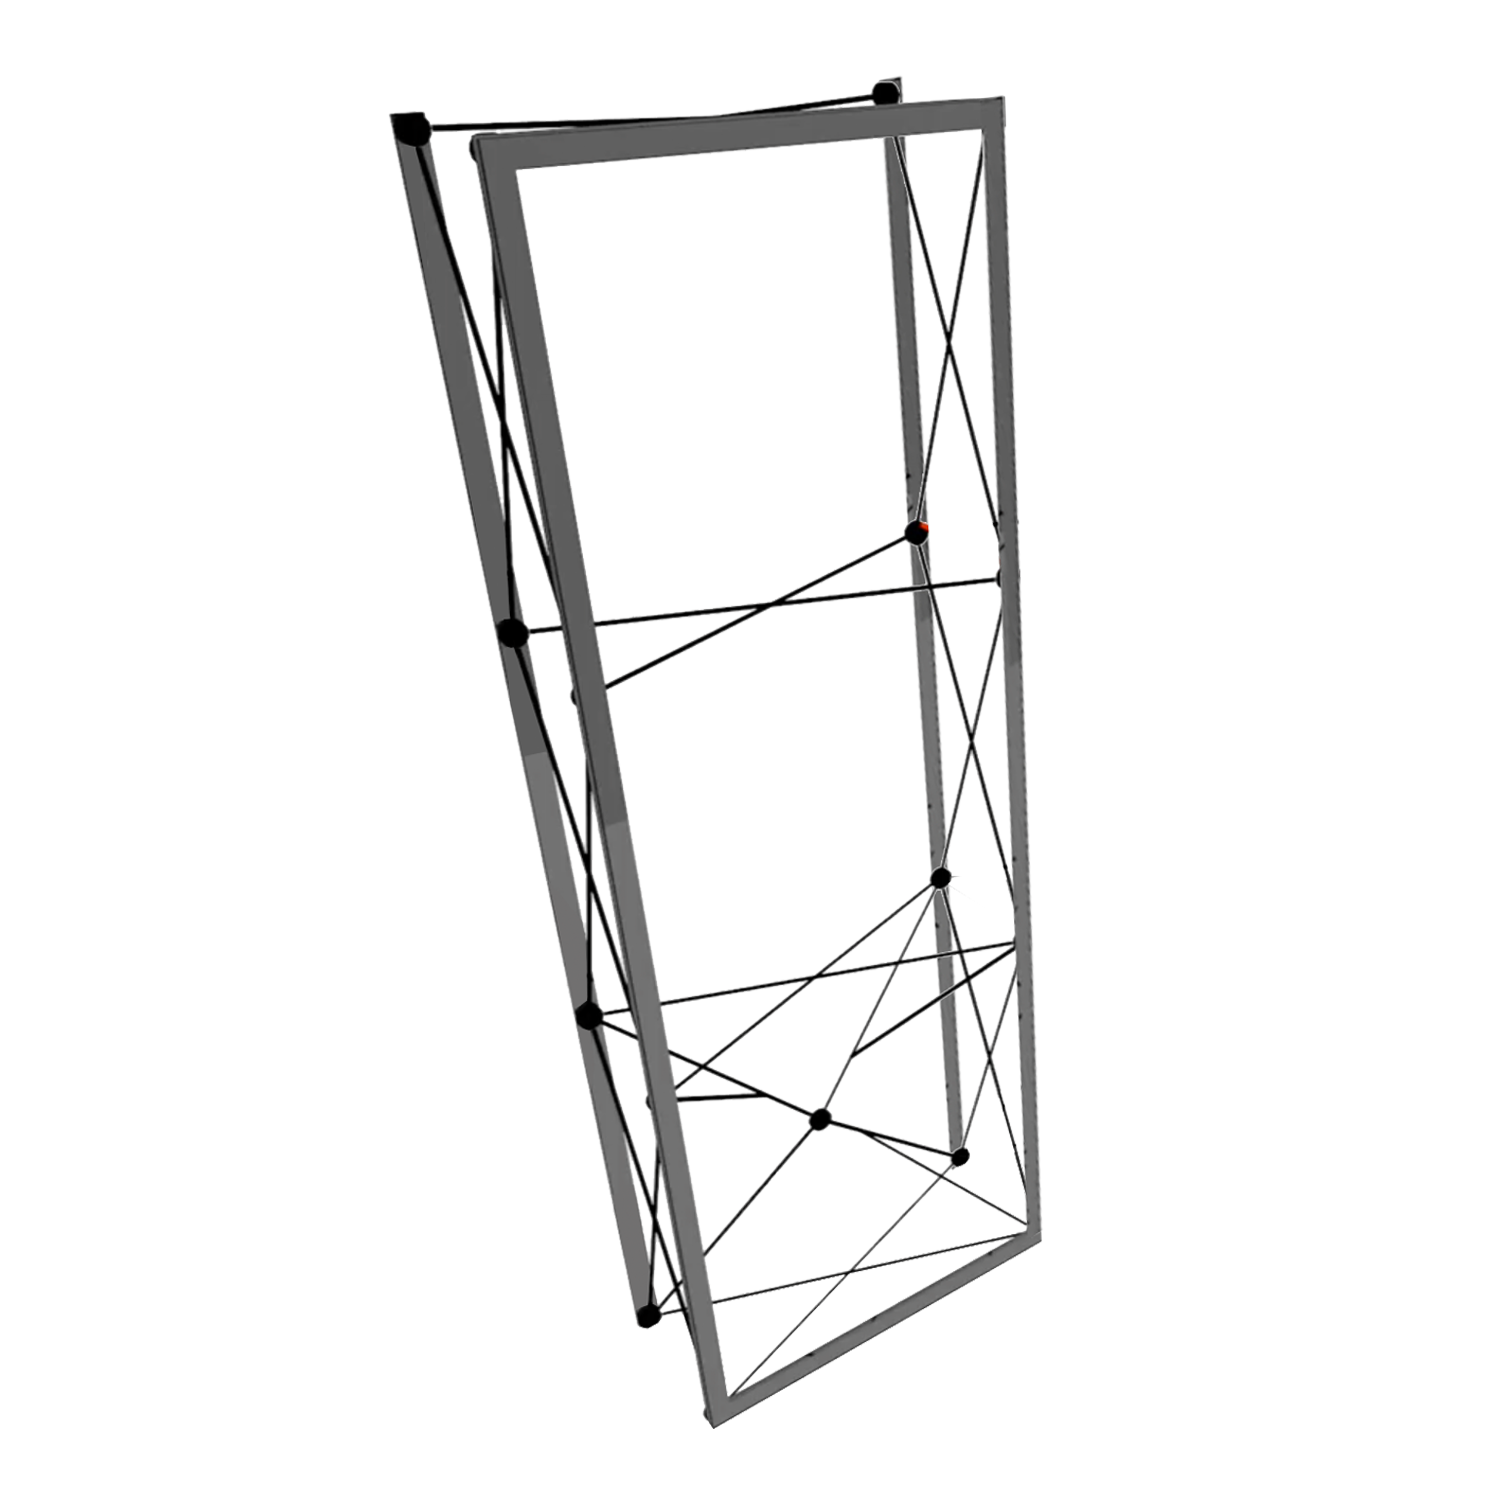 Frame Kit - 3' SPlus SEG Fabric Pop-up Kiosk w/ Endcaps (AB0546N-FX)